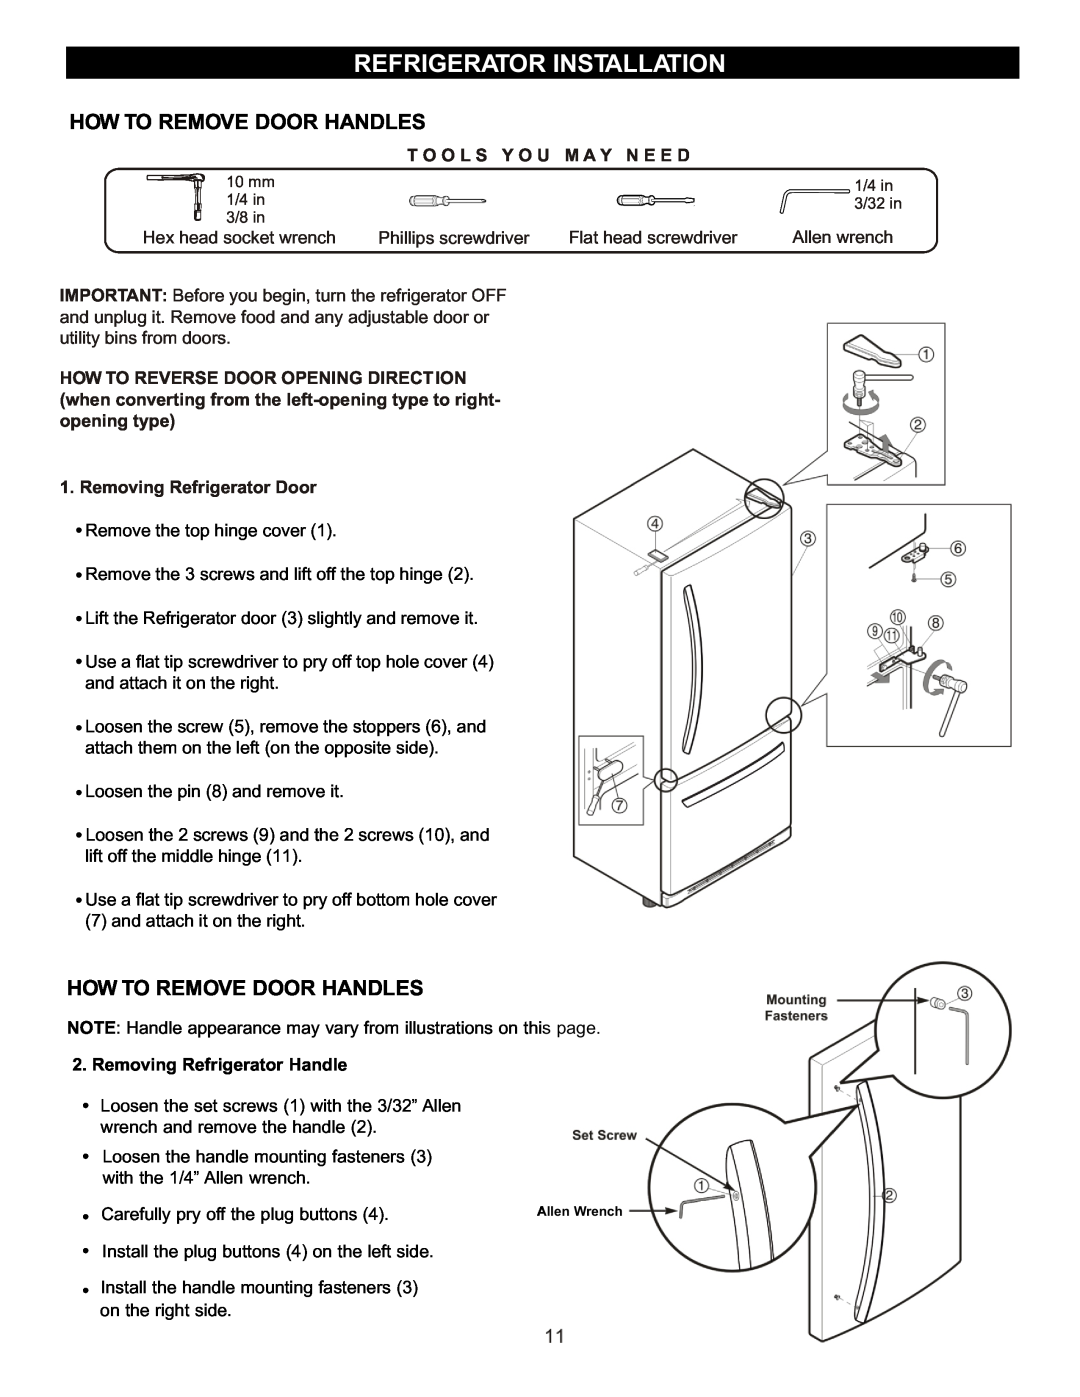 LG Electronics LBC2252, LRBC2051 How To Remove Door Handles, Refrigerator Installation, T O O L S Y O U M A Y N E E D 